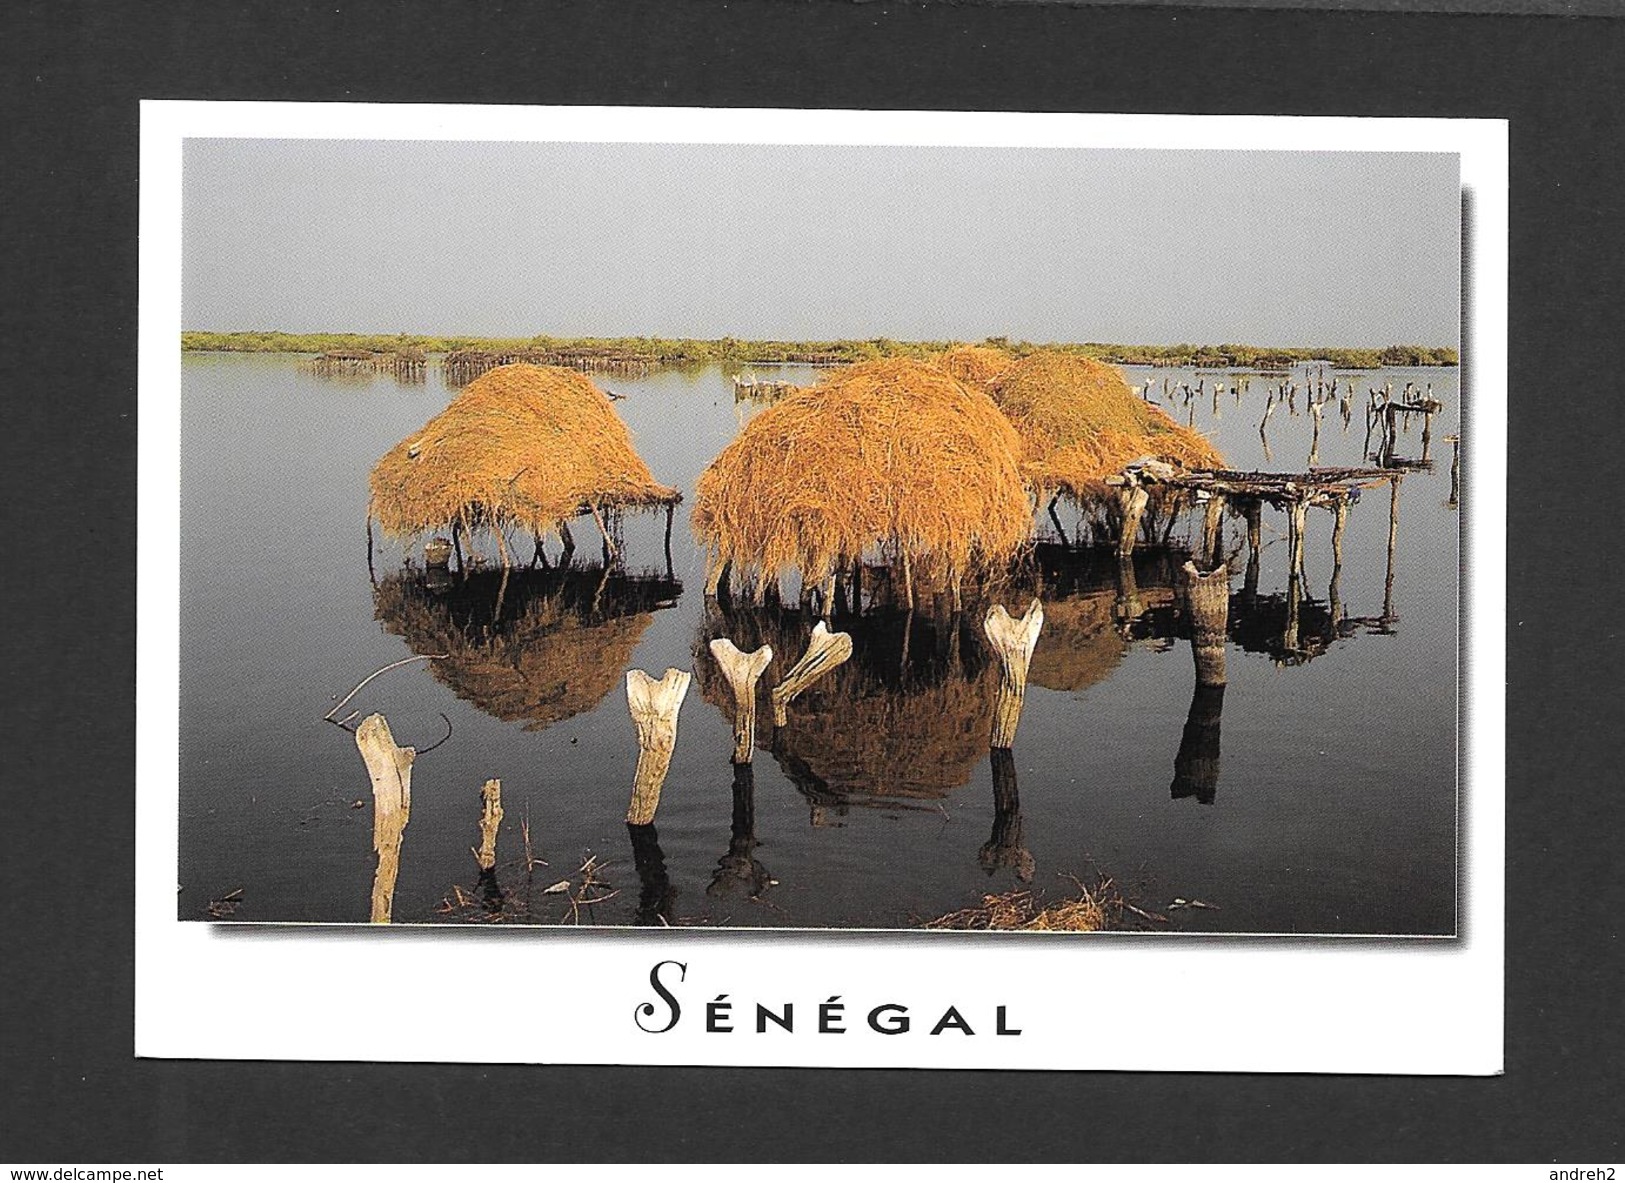 SÉNÉGAL - AFRIQUE - CHARMES ET COULEURS DU SÉNÉGAL FADIOUTH - PHOTO AM .BREGER - Senegal